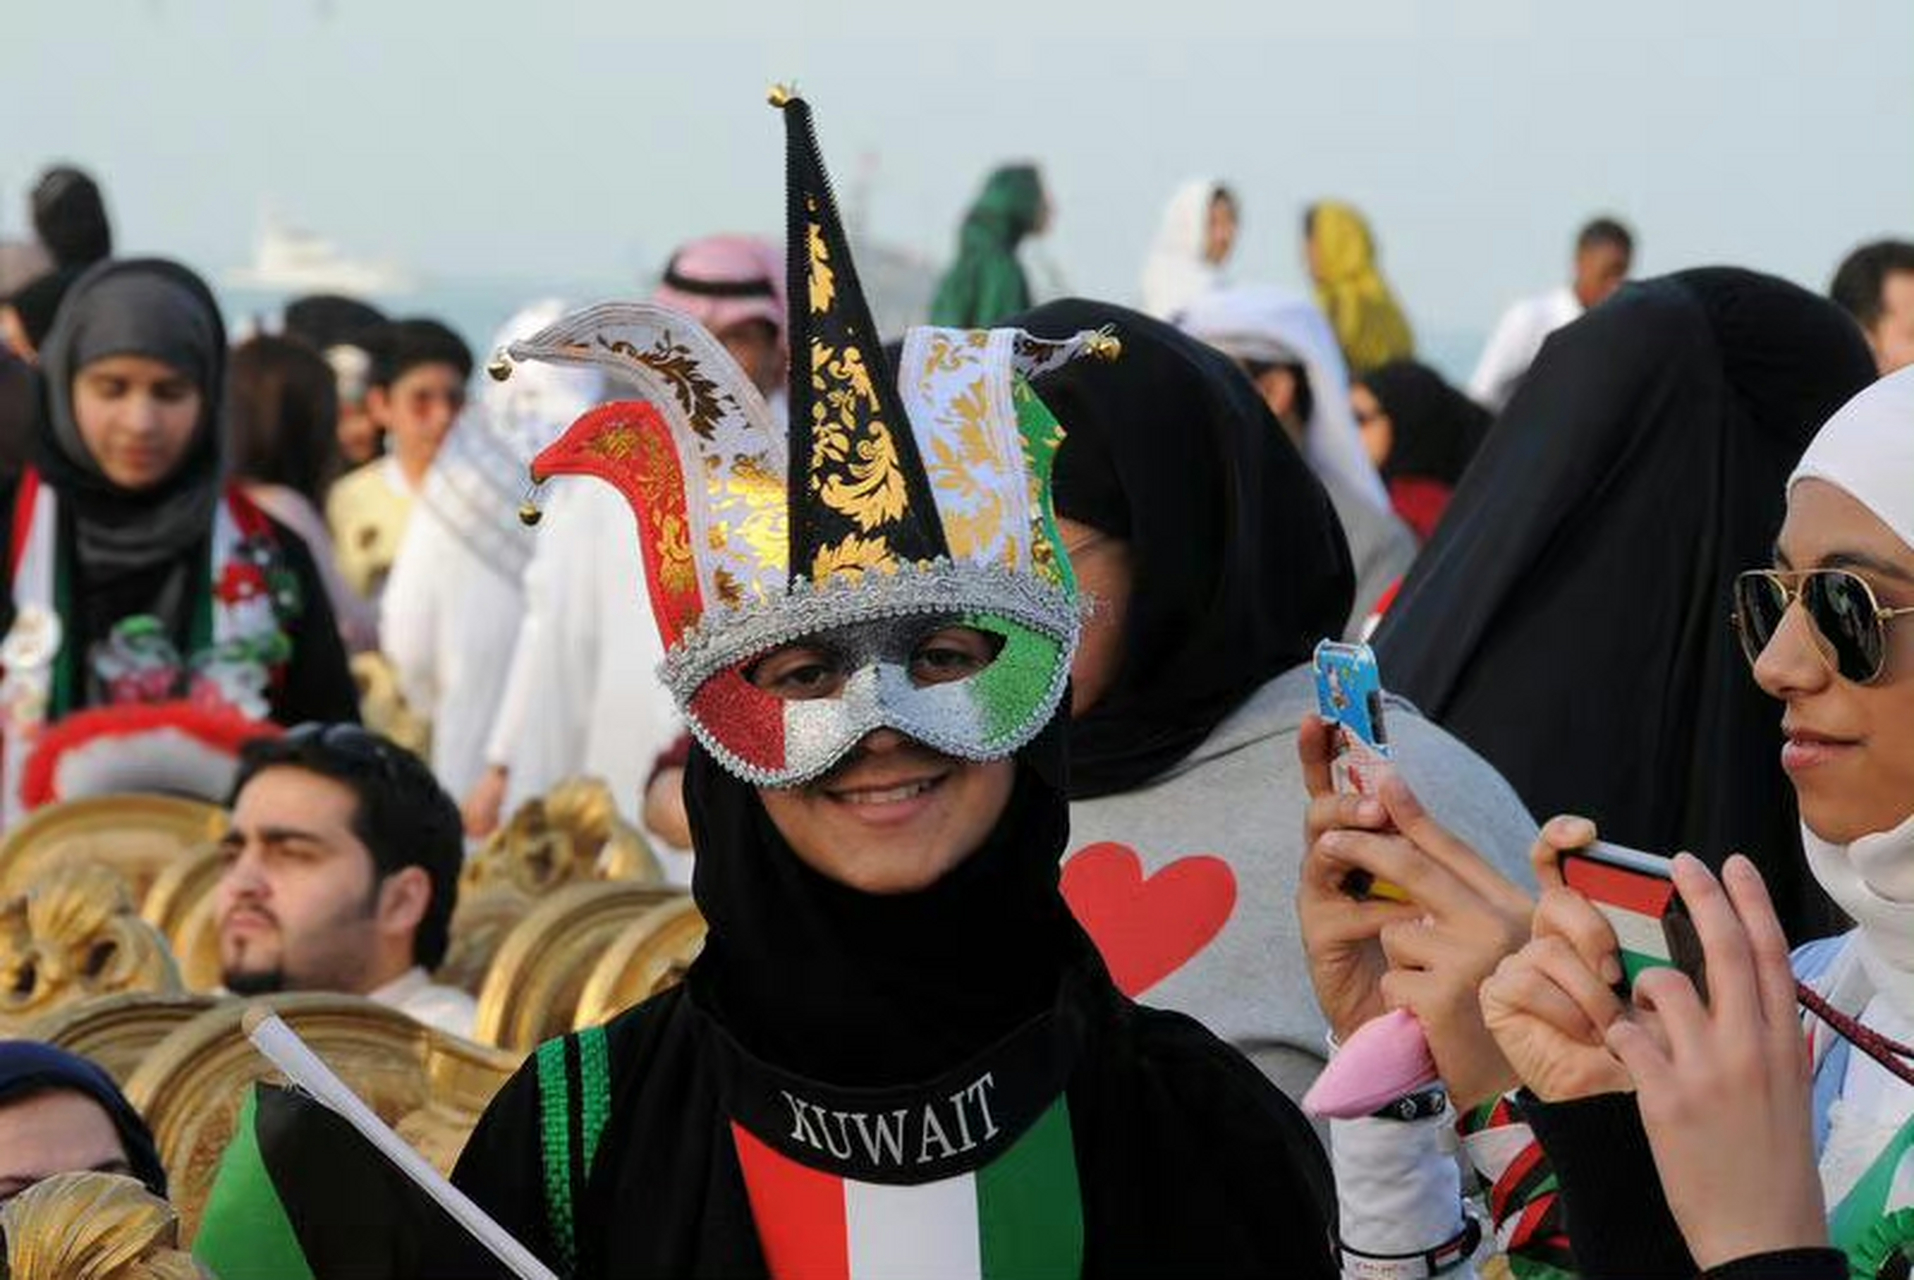 西亚小国科威特常住人口四百多万,其中只有一百来万是本国人,其他三百